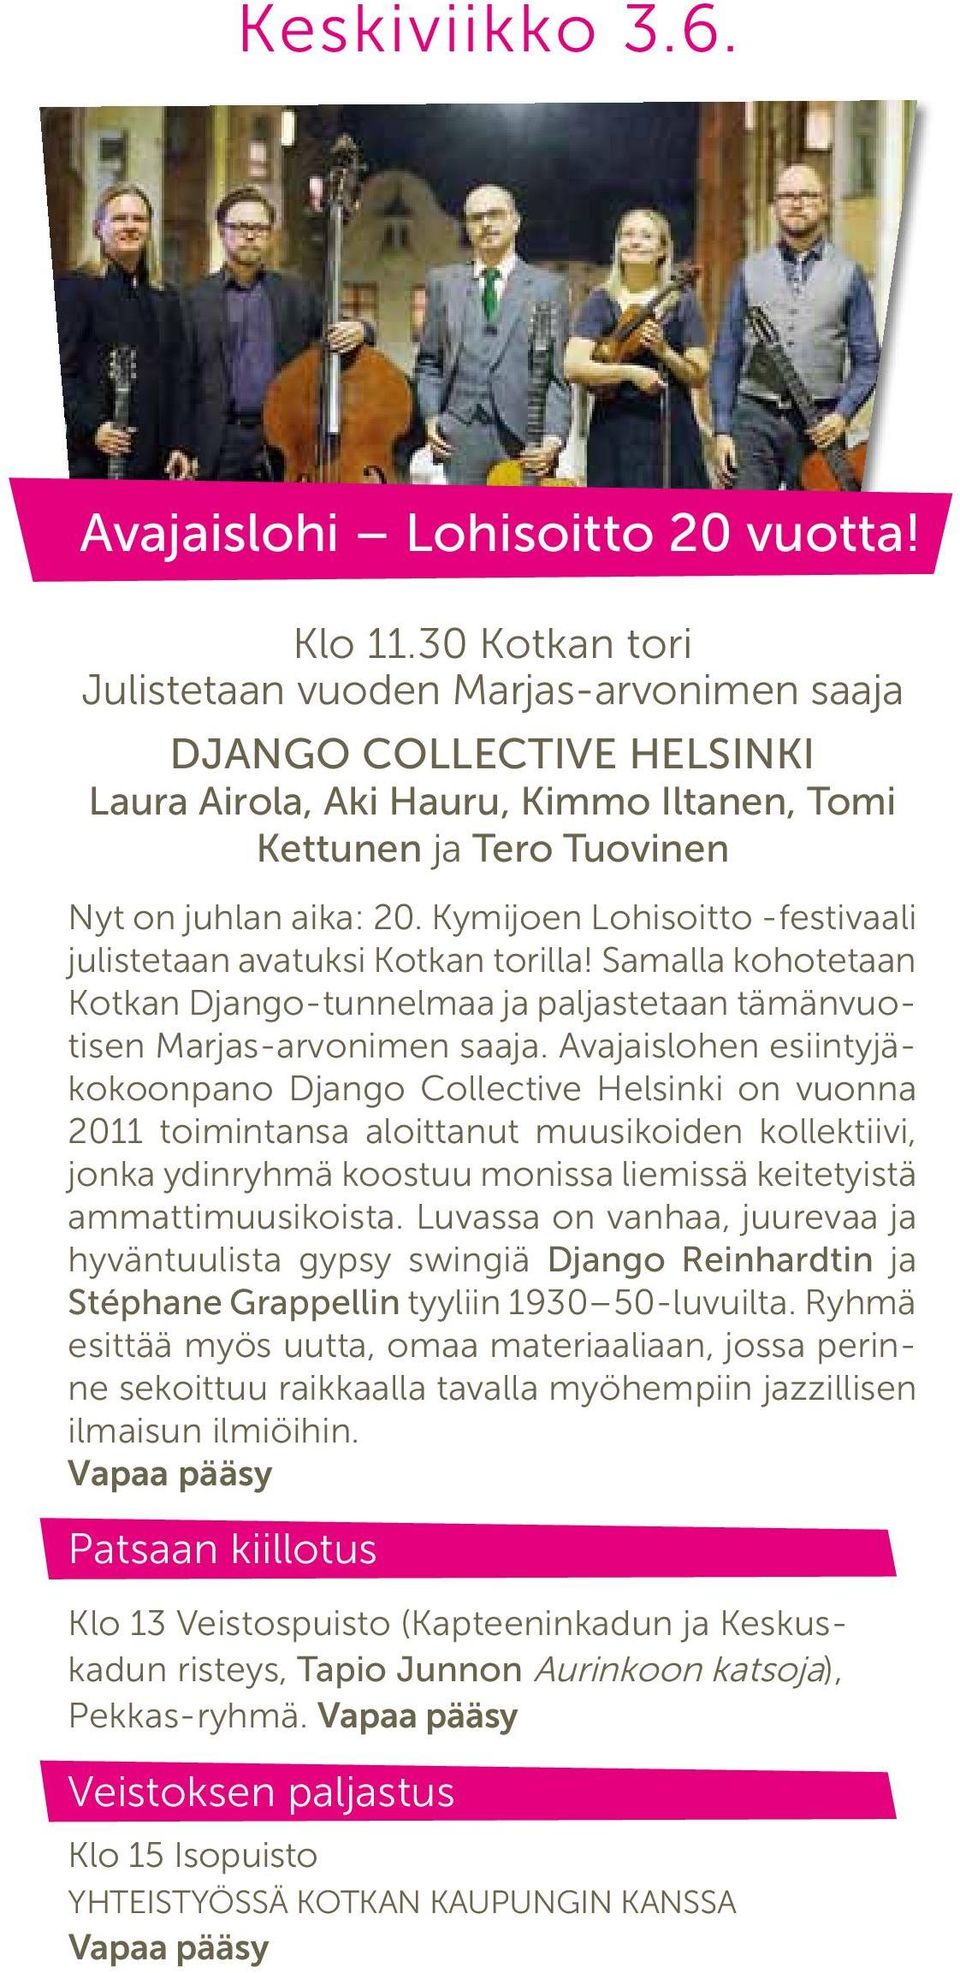 Kymijoen Lohisoitto -festivaali julistetaan avatuksi Kotkan torilla! Samalla kohotetaan Kotkan Django-tunnelmaa ja paljastetaan tämänvuotisen Marjas-arvonimen saaja.